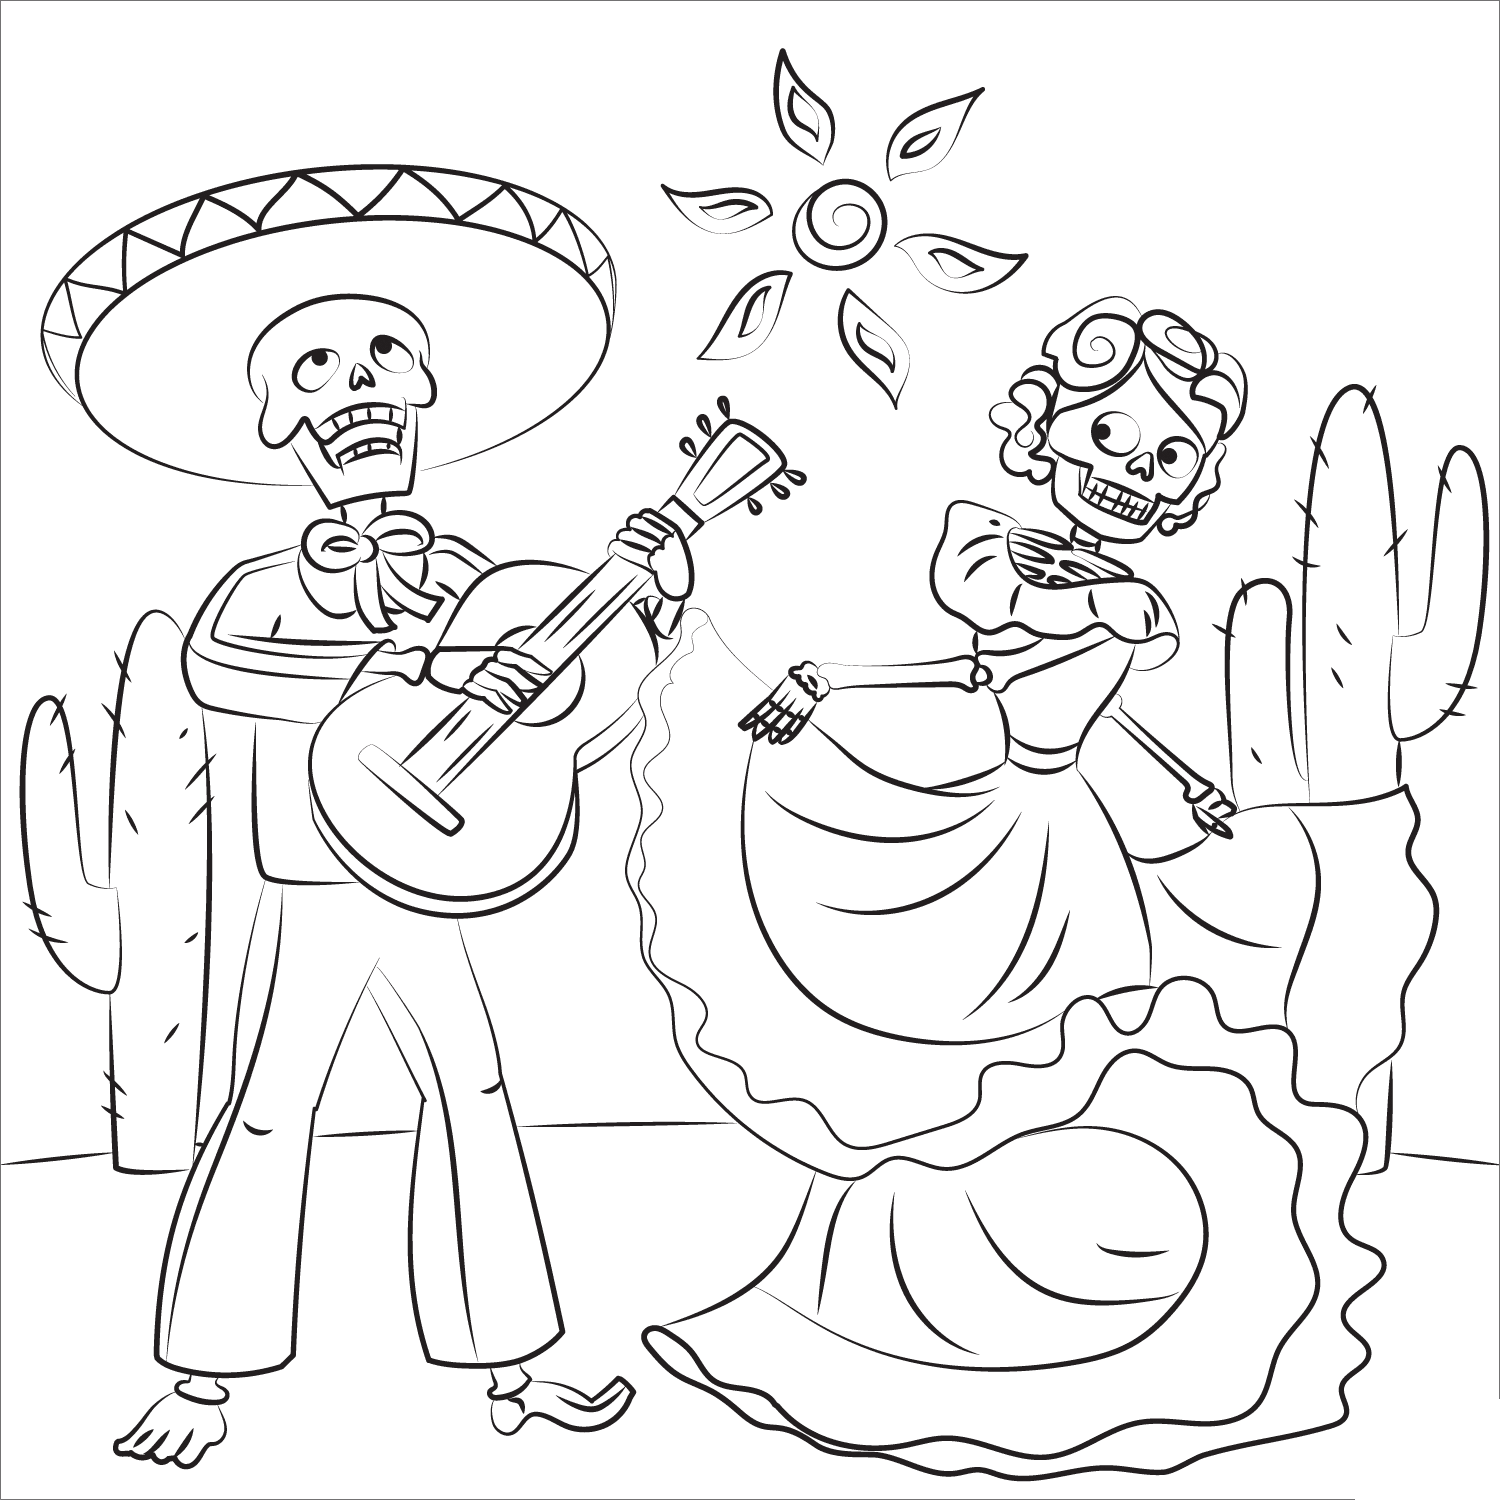 Esqueleto tocando la guitarra y mujer esqueleto bailando del Día de Muertos